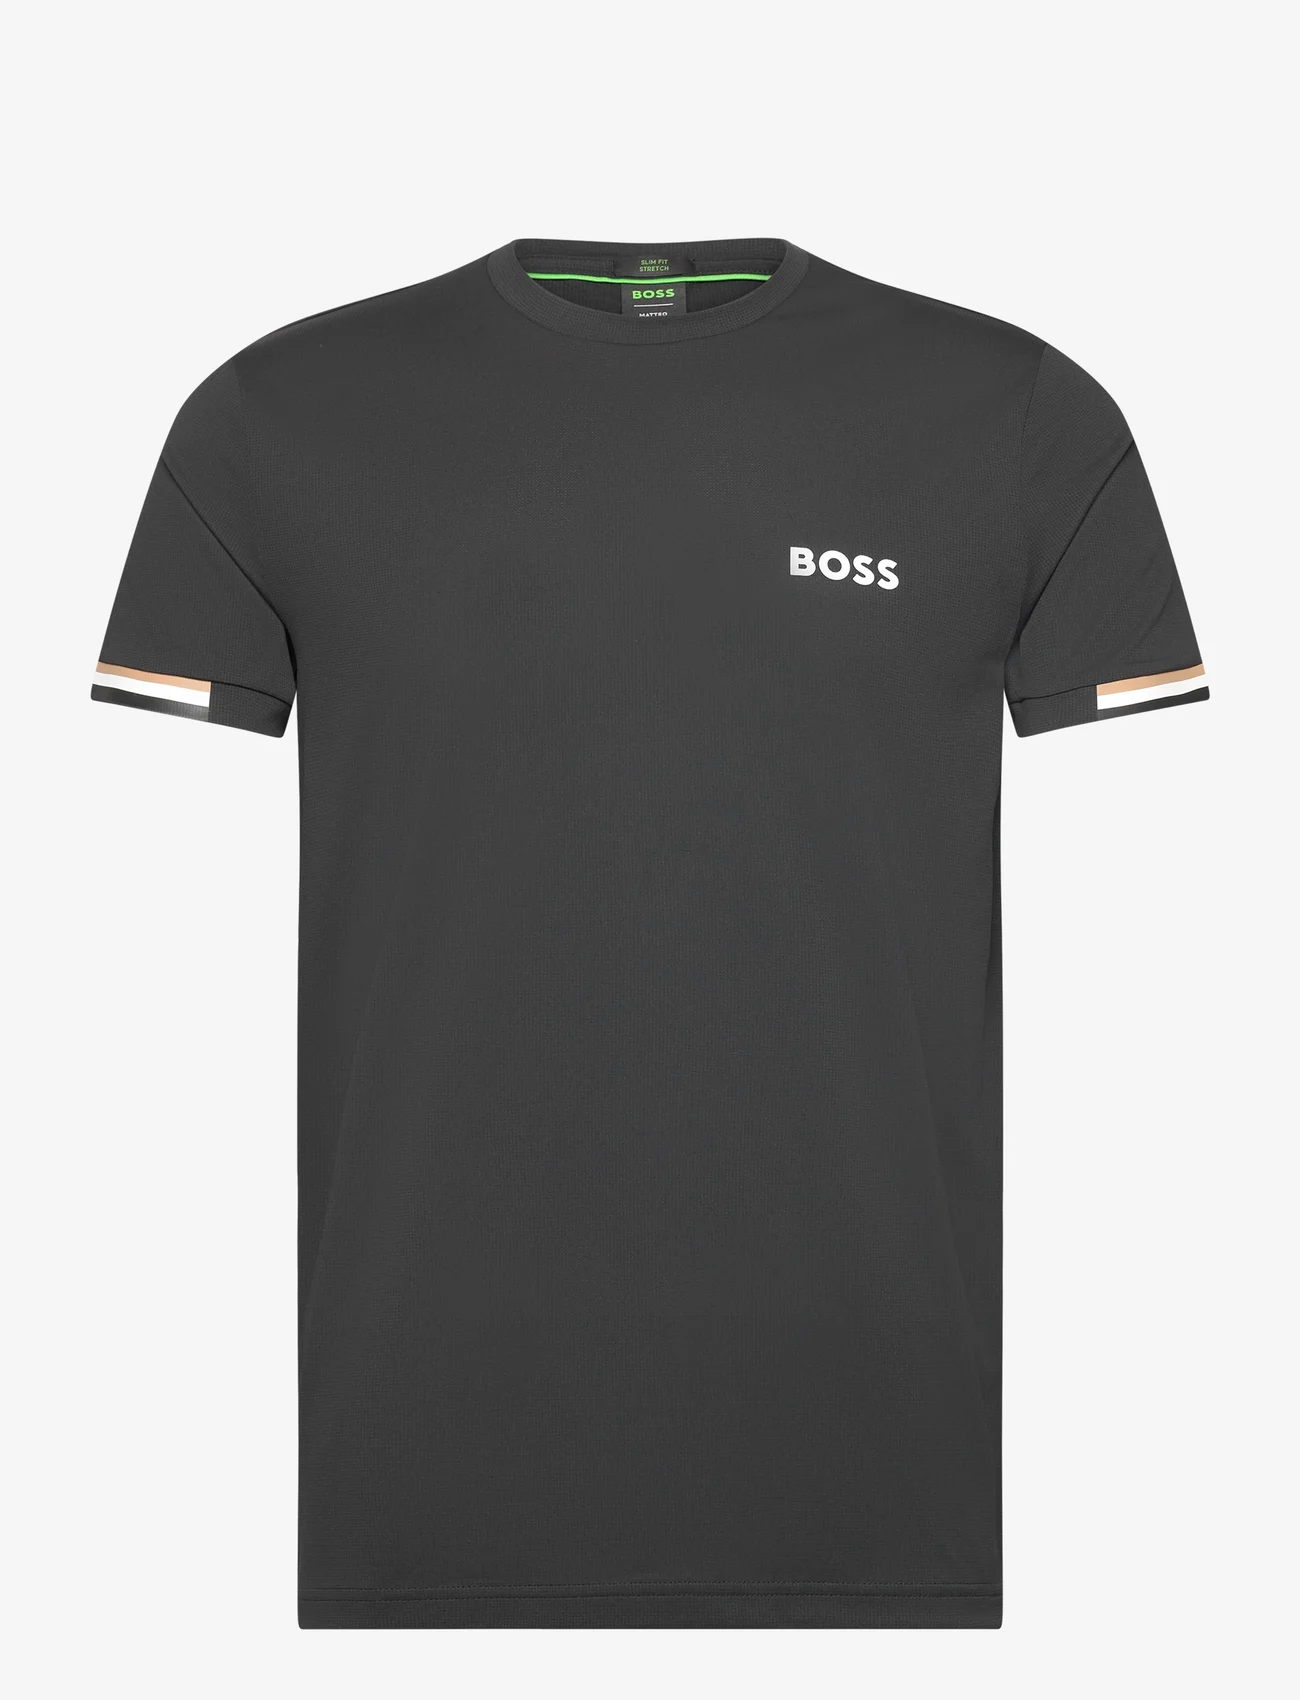 BOSS - Tee MB - t-shirts - black - 0